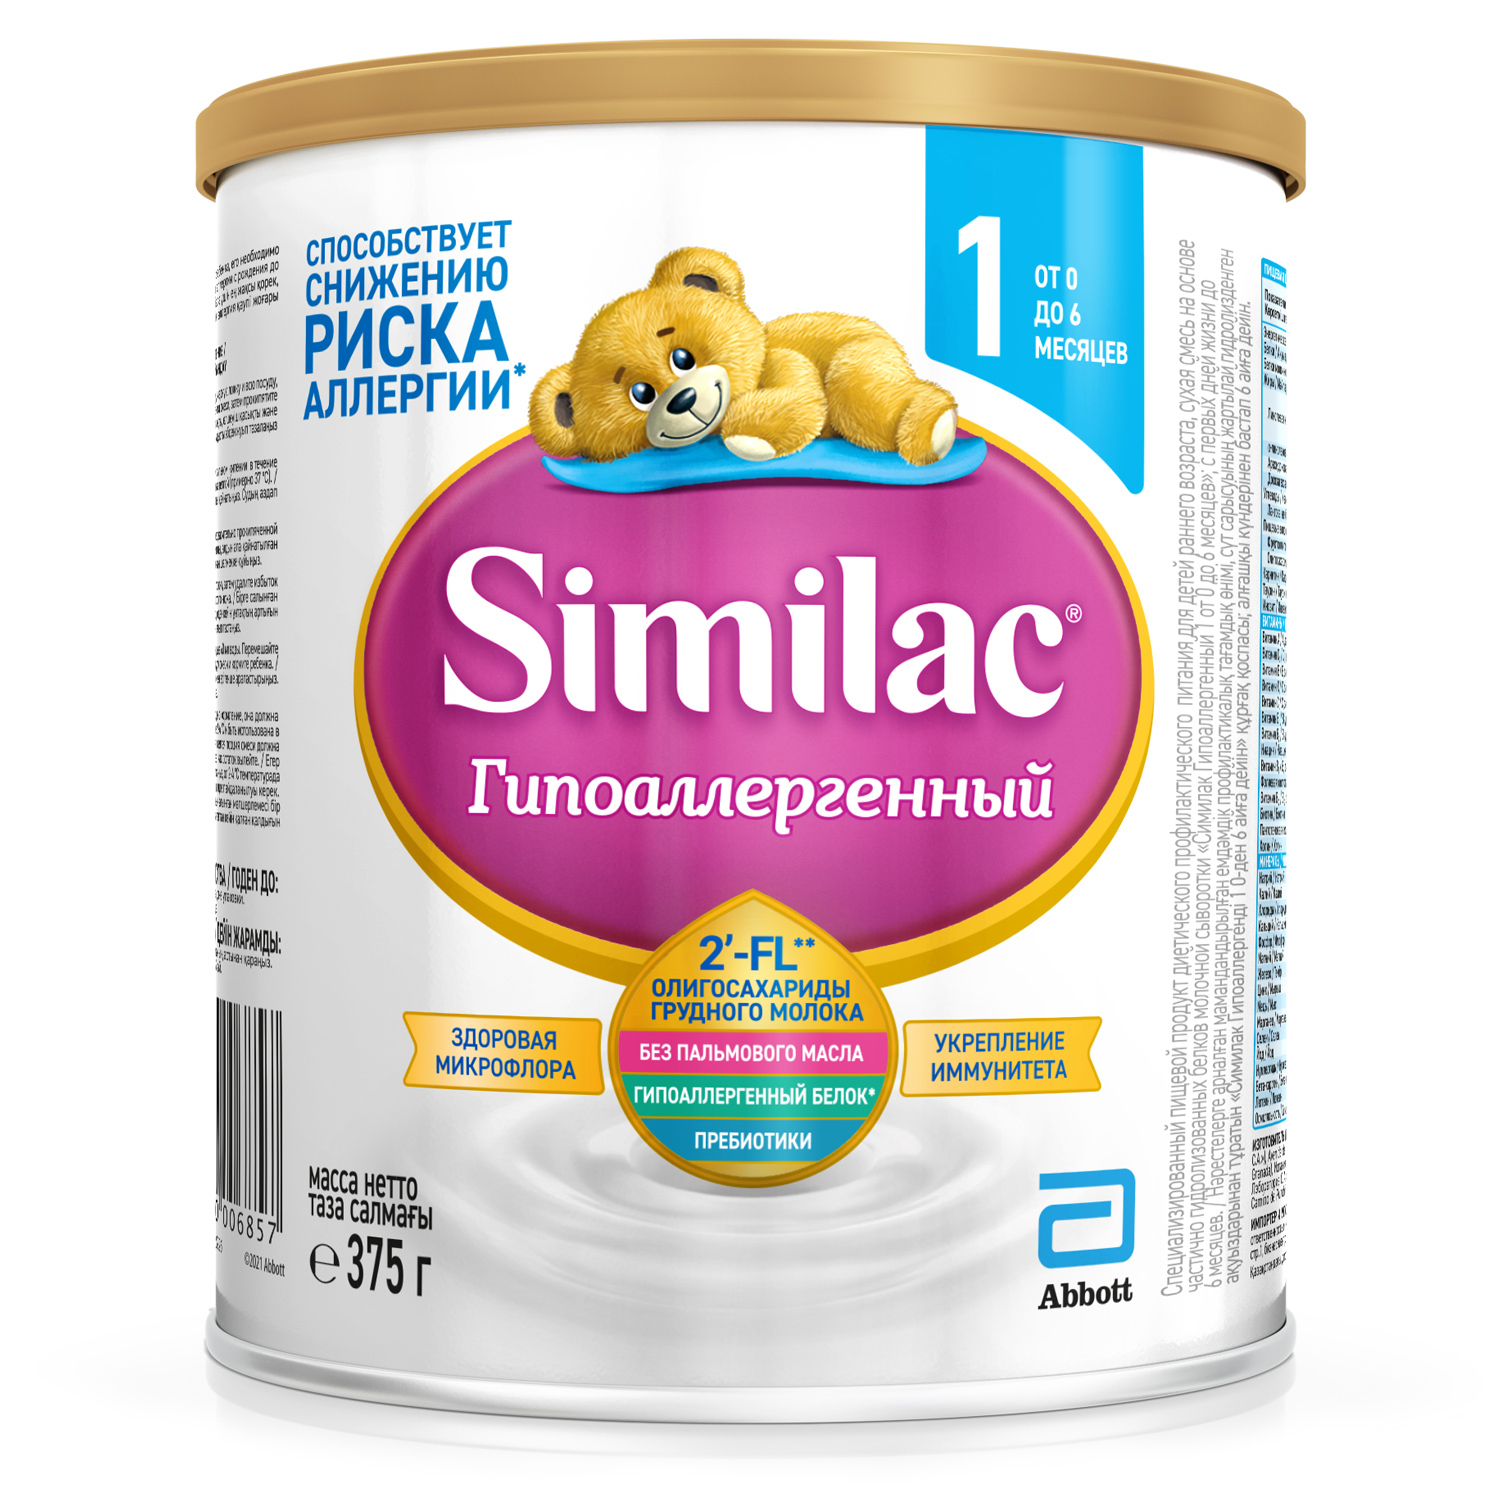 Молочная смесь Similac Гипоаллергенный, 375 г 0-6 месяцев